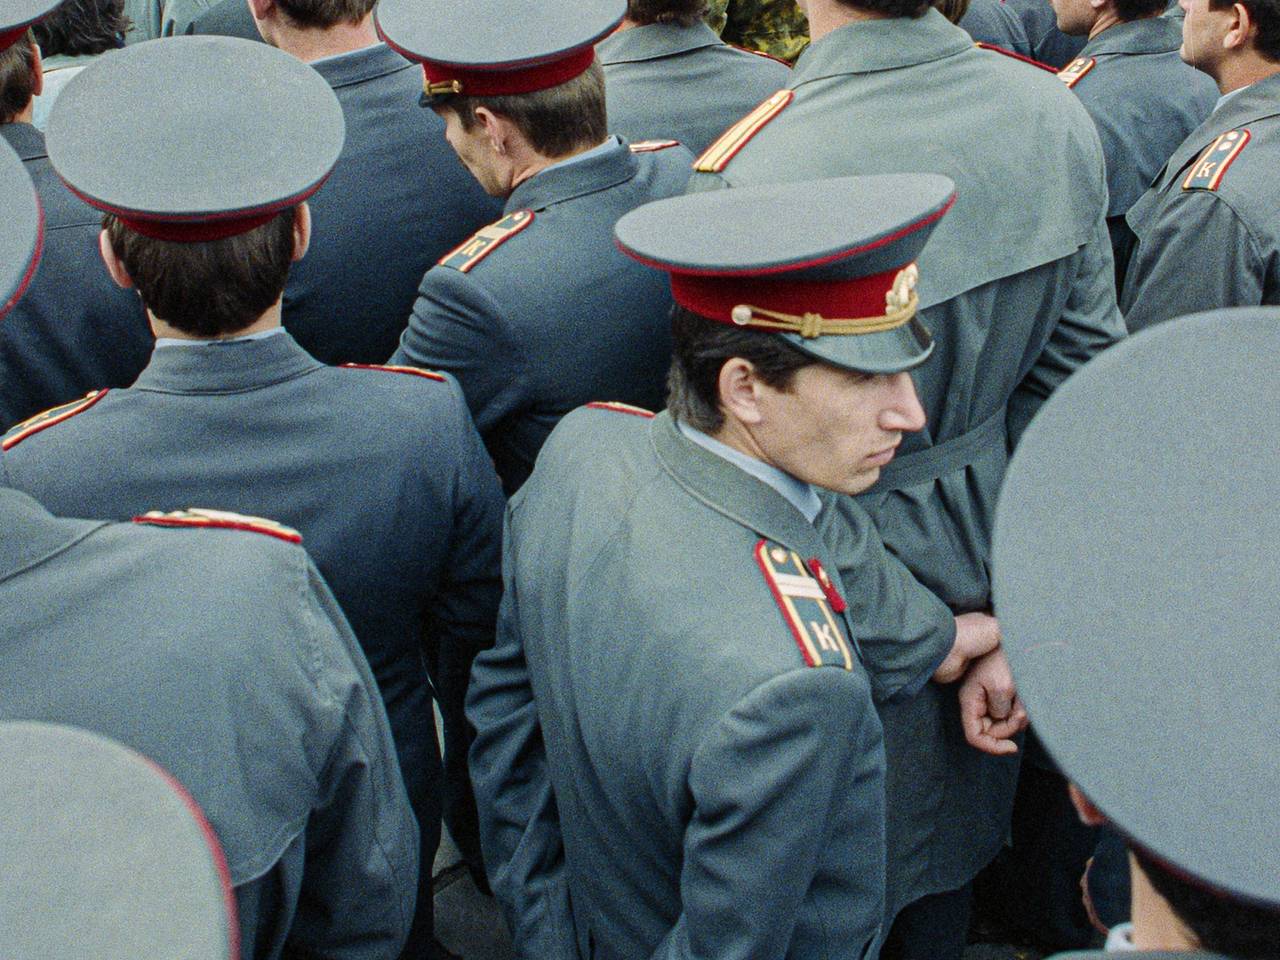 ФОТО ⟩ Защищали безопасность Эстонии ценой своей жизни: полицейские почтили память погибших коллег